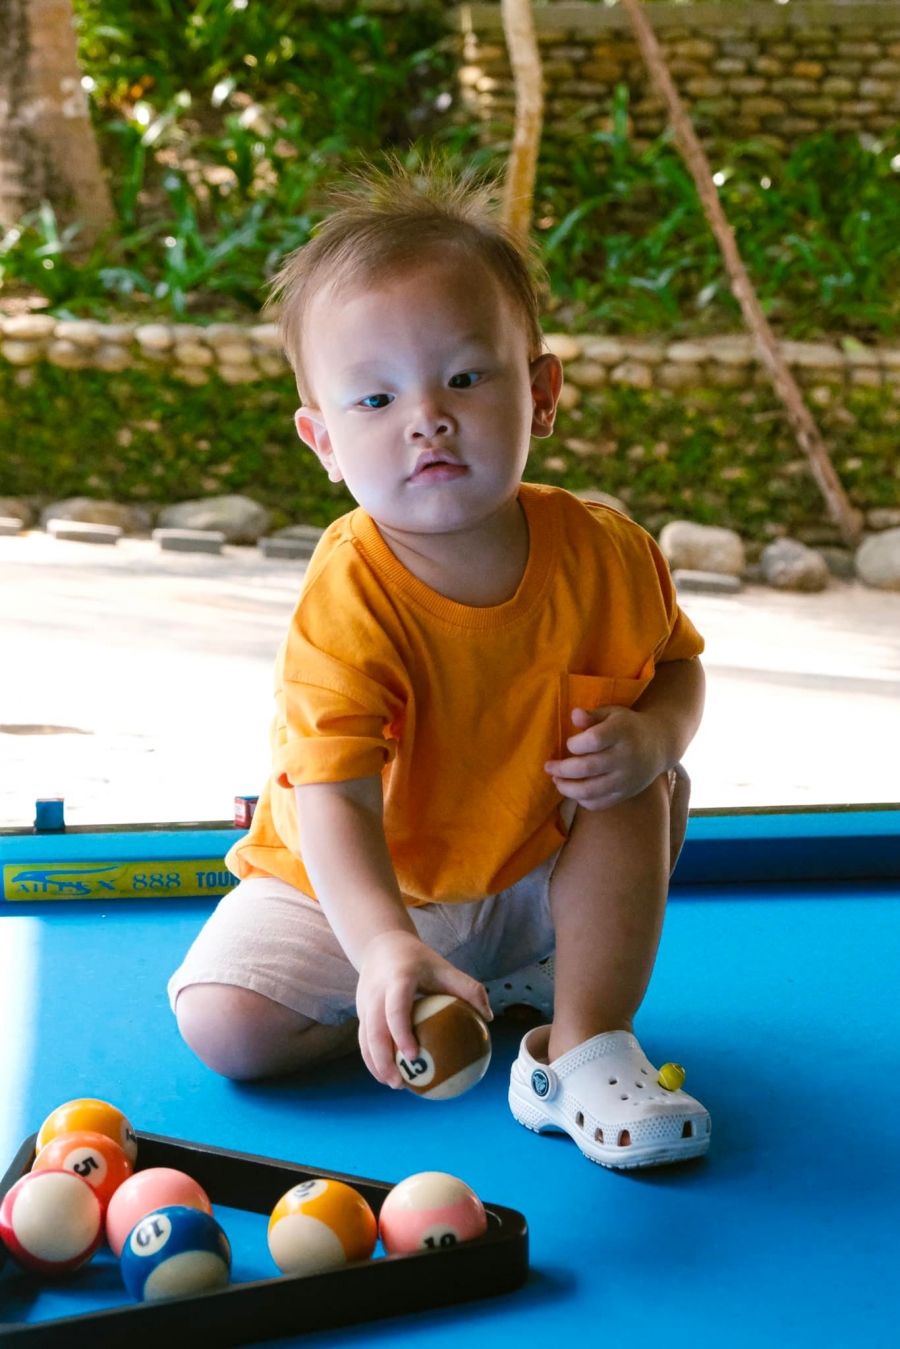 Nhóc tỳ nhà Hồ Ngọc Hà là một trong những hot kid thu hút sự quan tâm đặc biệt của cư dân mạng.